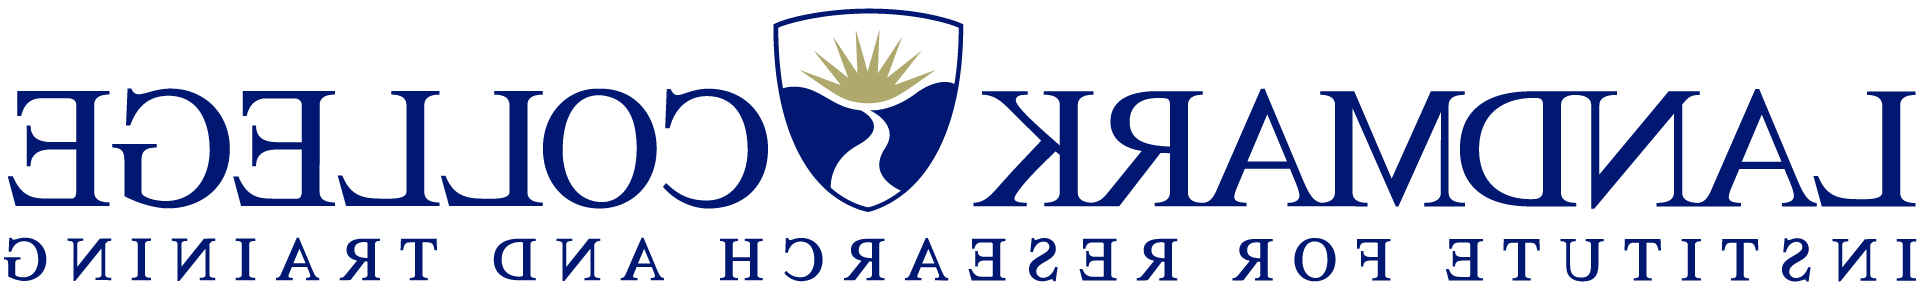 L和mark College Institute for 研究 和 培训 logo